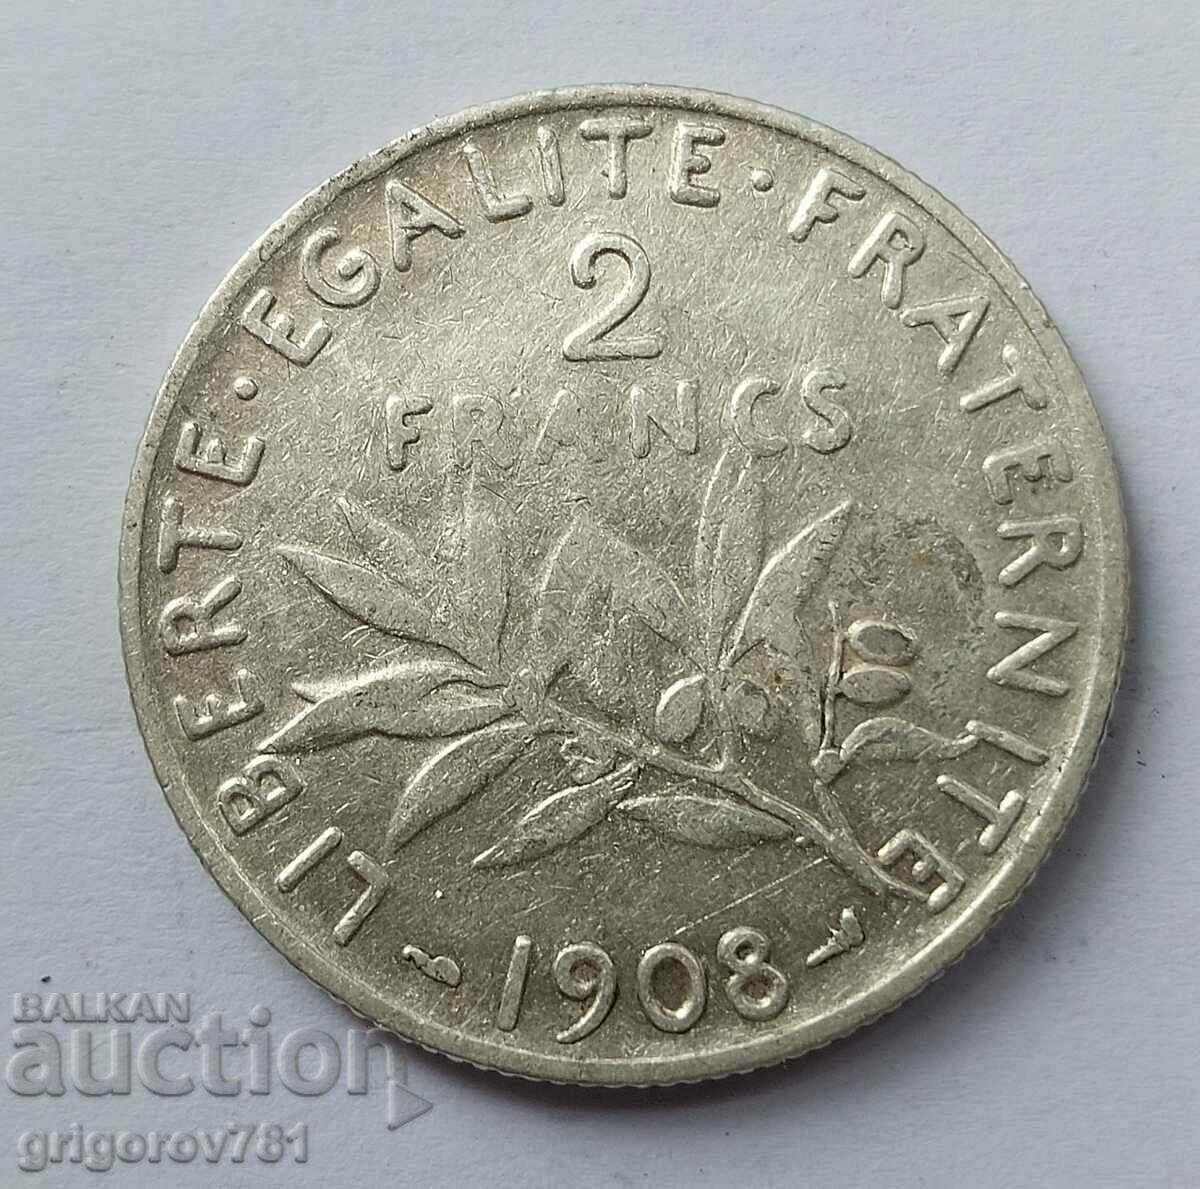 Ασημένιο 2 φράγκα Γαλλία 1908 - ασημένιο νόμισμα №18